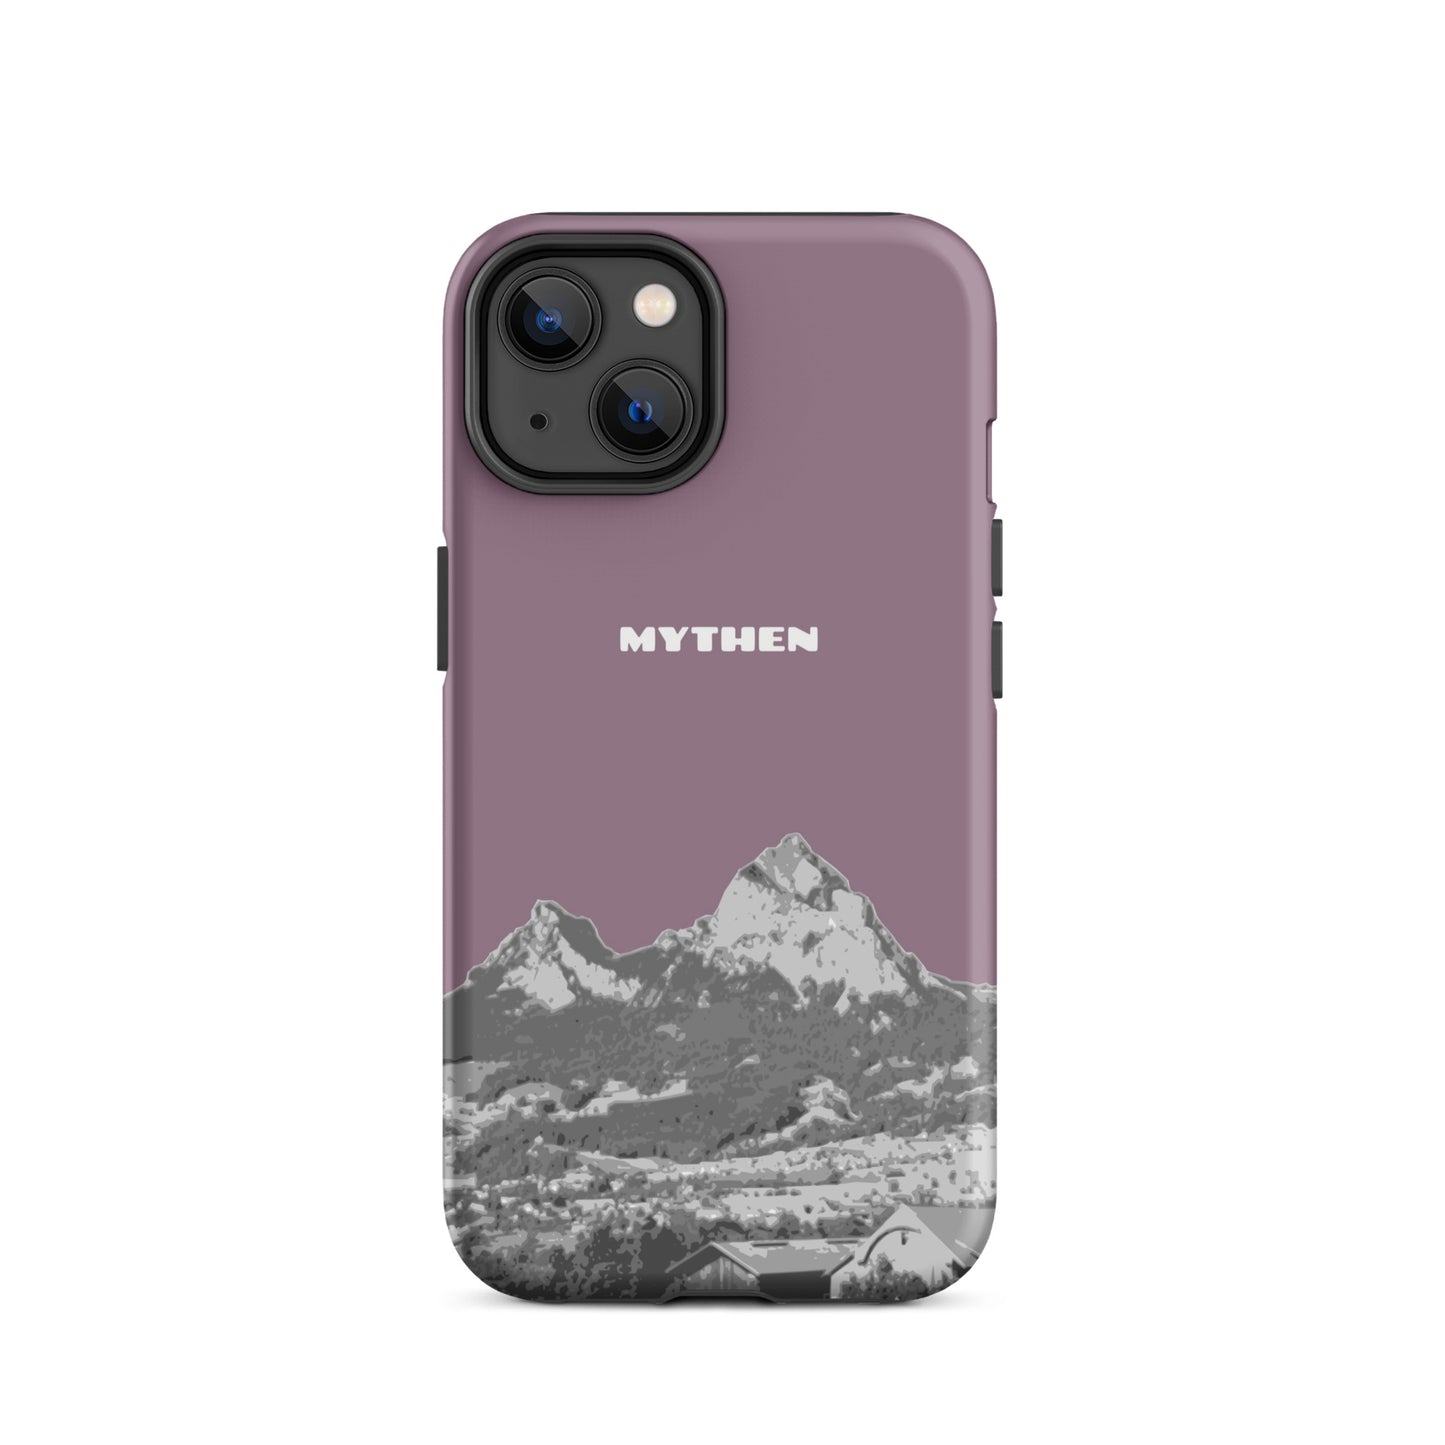 Hülle für das iPhone 14 von Apple in der Farbe Pastellviolett, die den Grossen Mythen und den Kleinen Mythen bei Schwyz zeigt. 